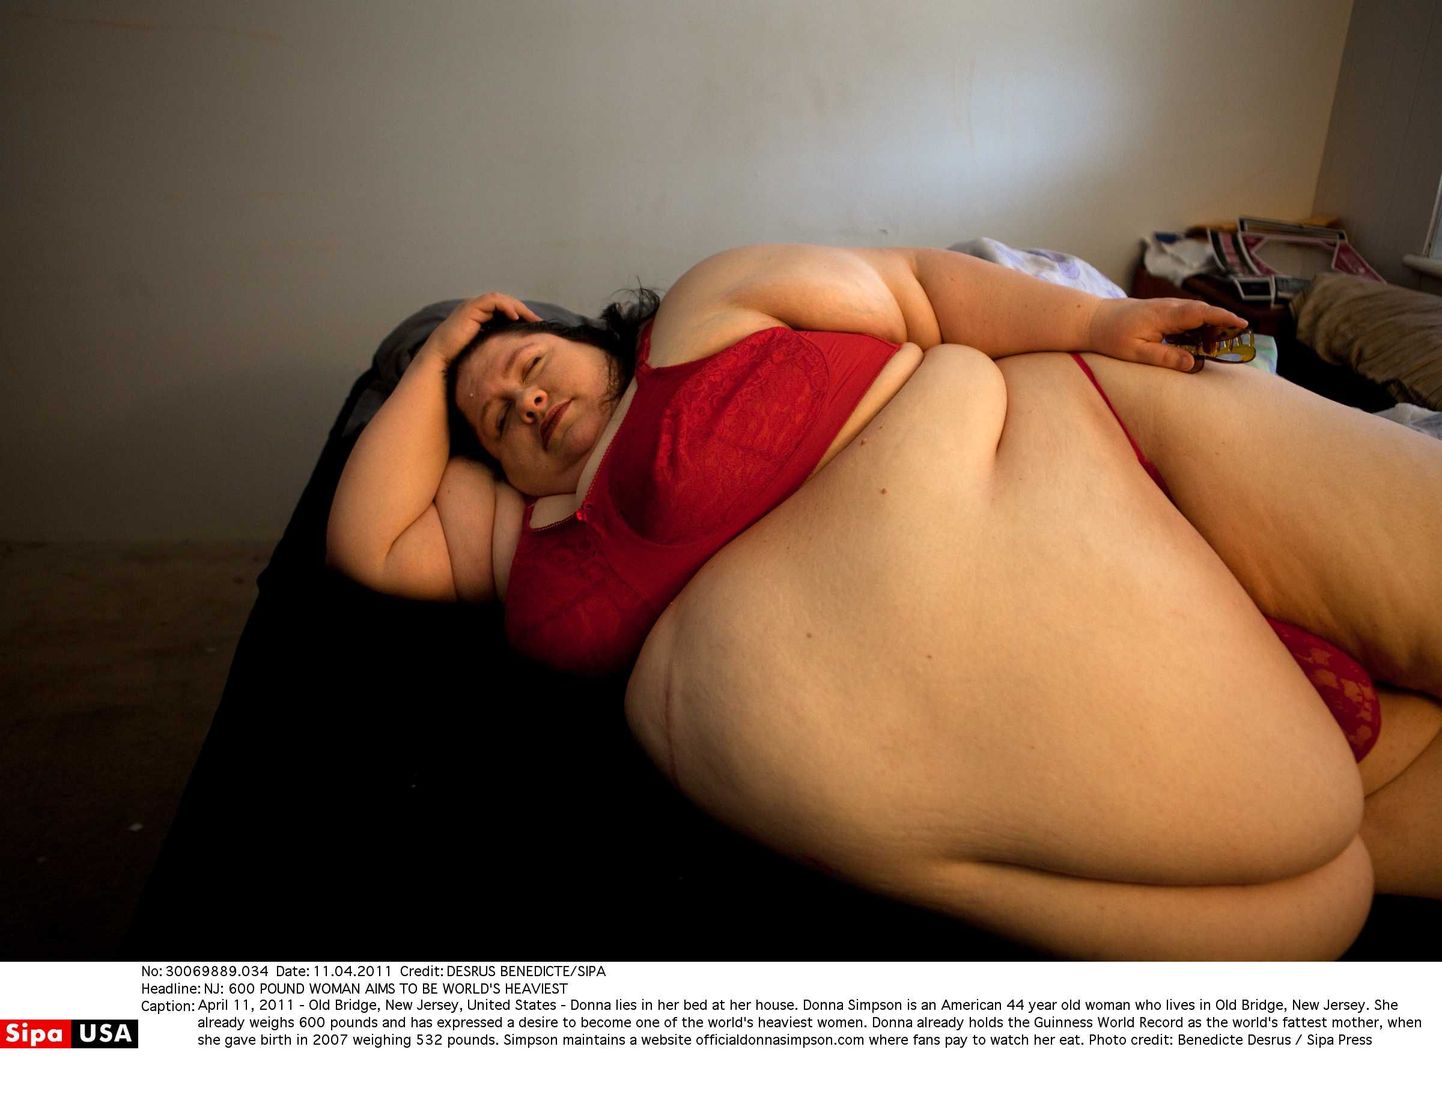 USAs New Jerseys elav Donna Simpson soovis 44aastaselt saada maailma kõige paksemaks naiseks.